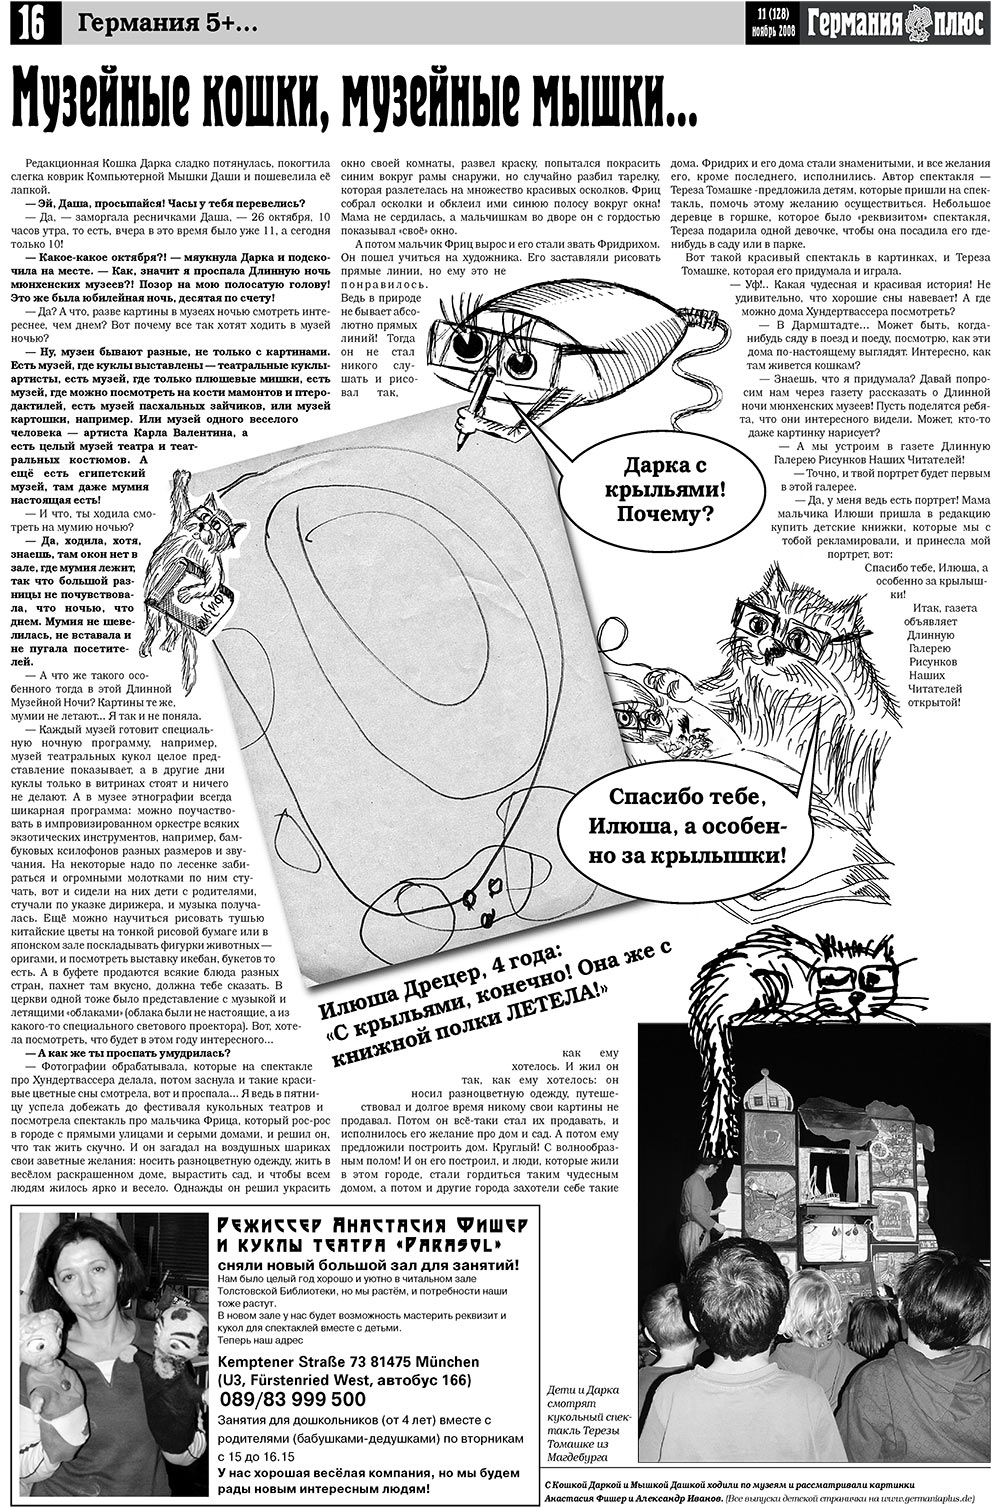 Германия плюс (газета). 2008 год, номер 11, стр. 18